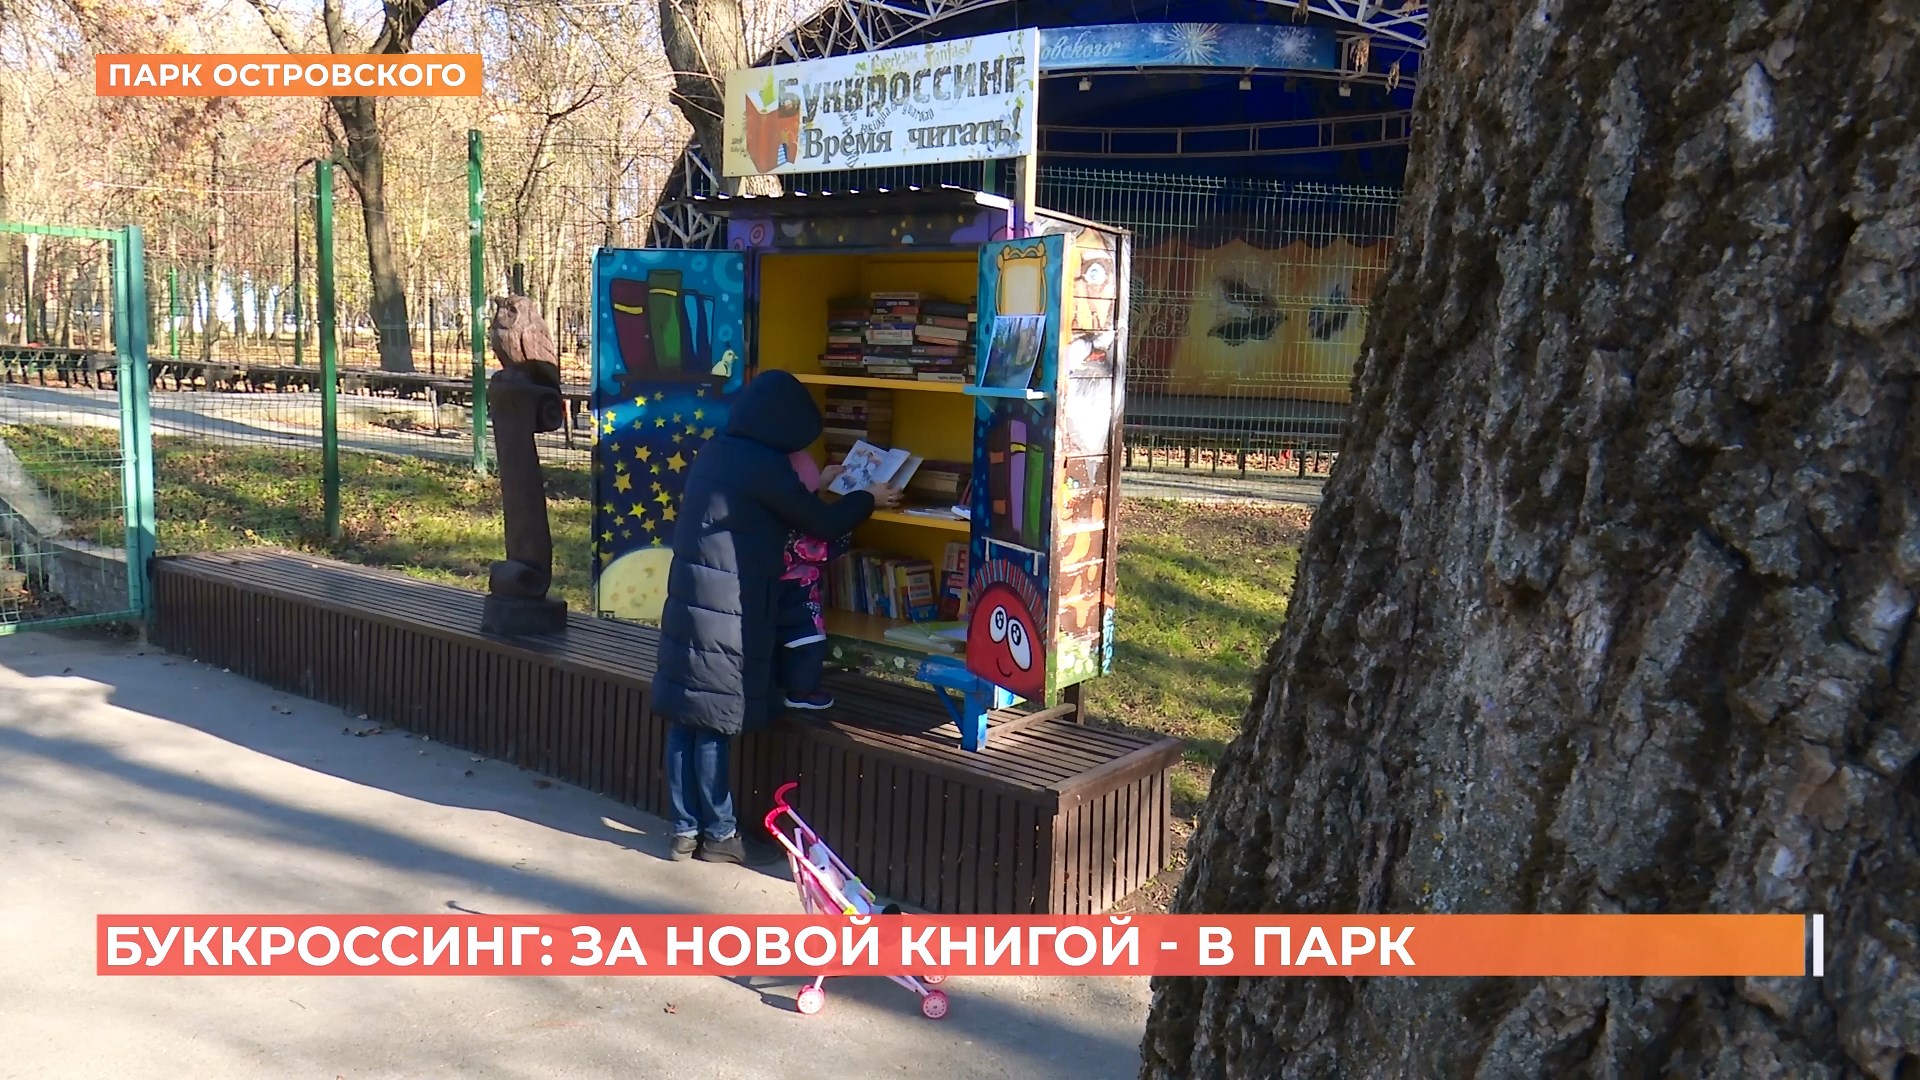 Шкафы с бесплатной литературой снова появились в ростовских парках